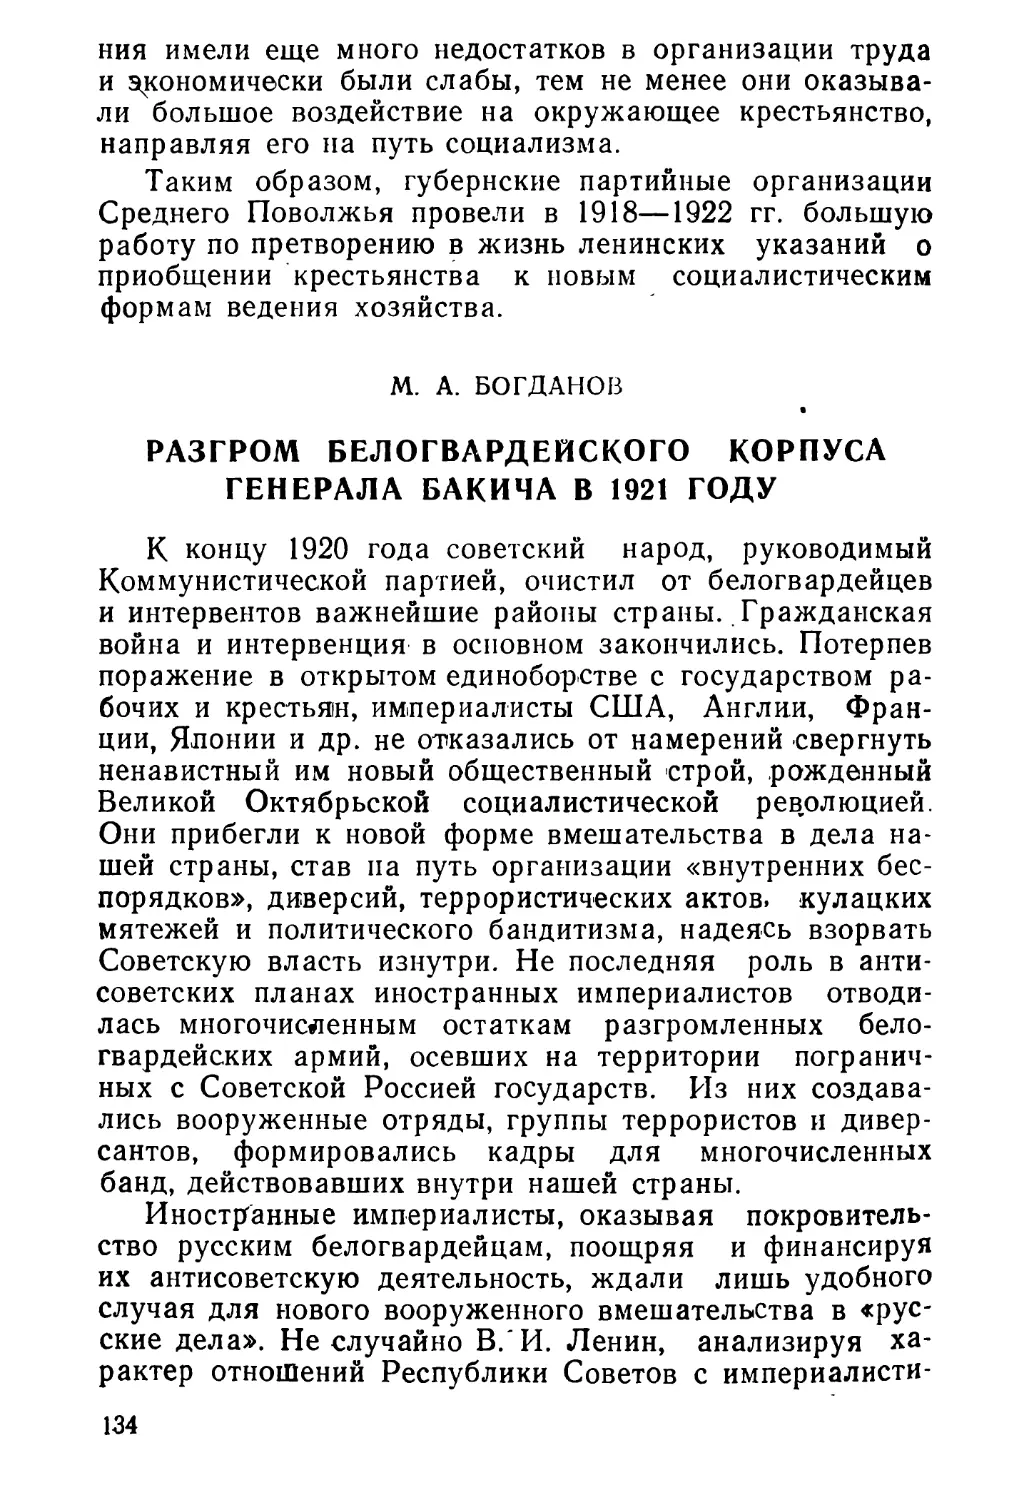 М. А. Богдaнов. Разгром белогвардейского корпуса генерала Бакича в 1921 году